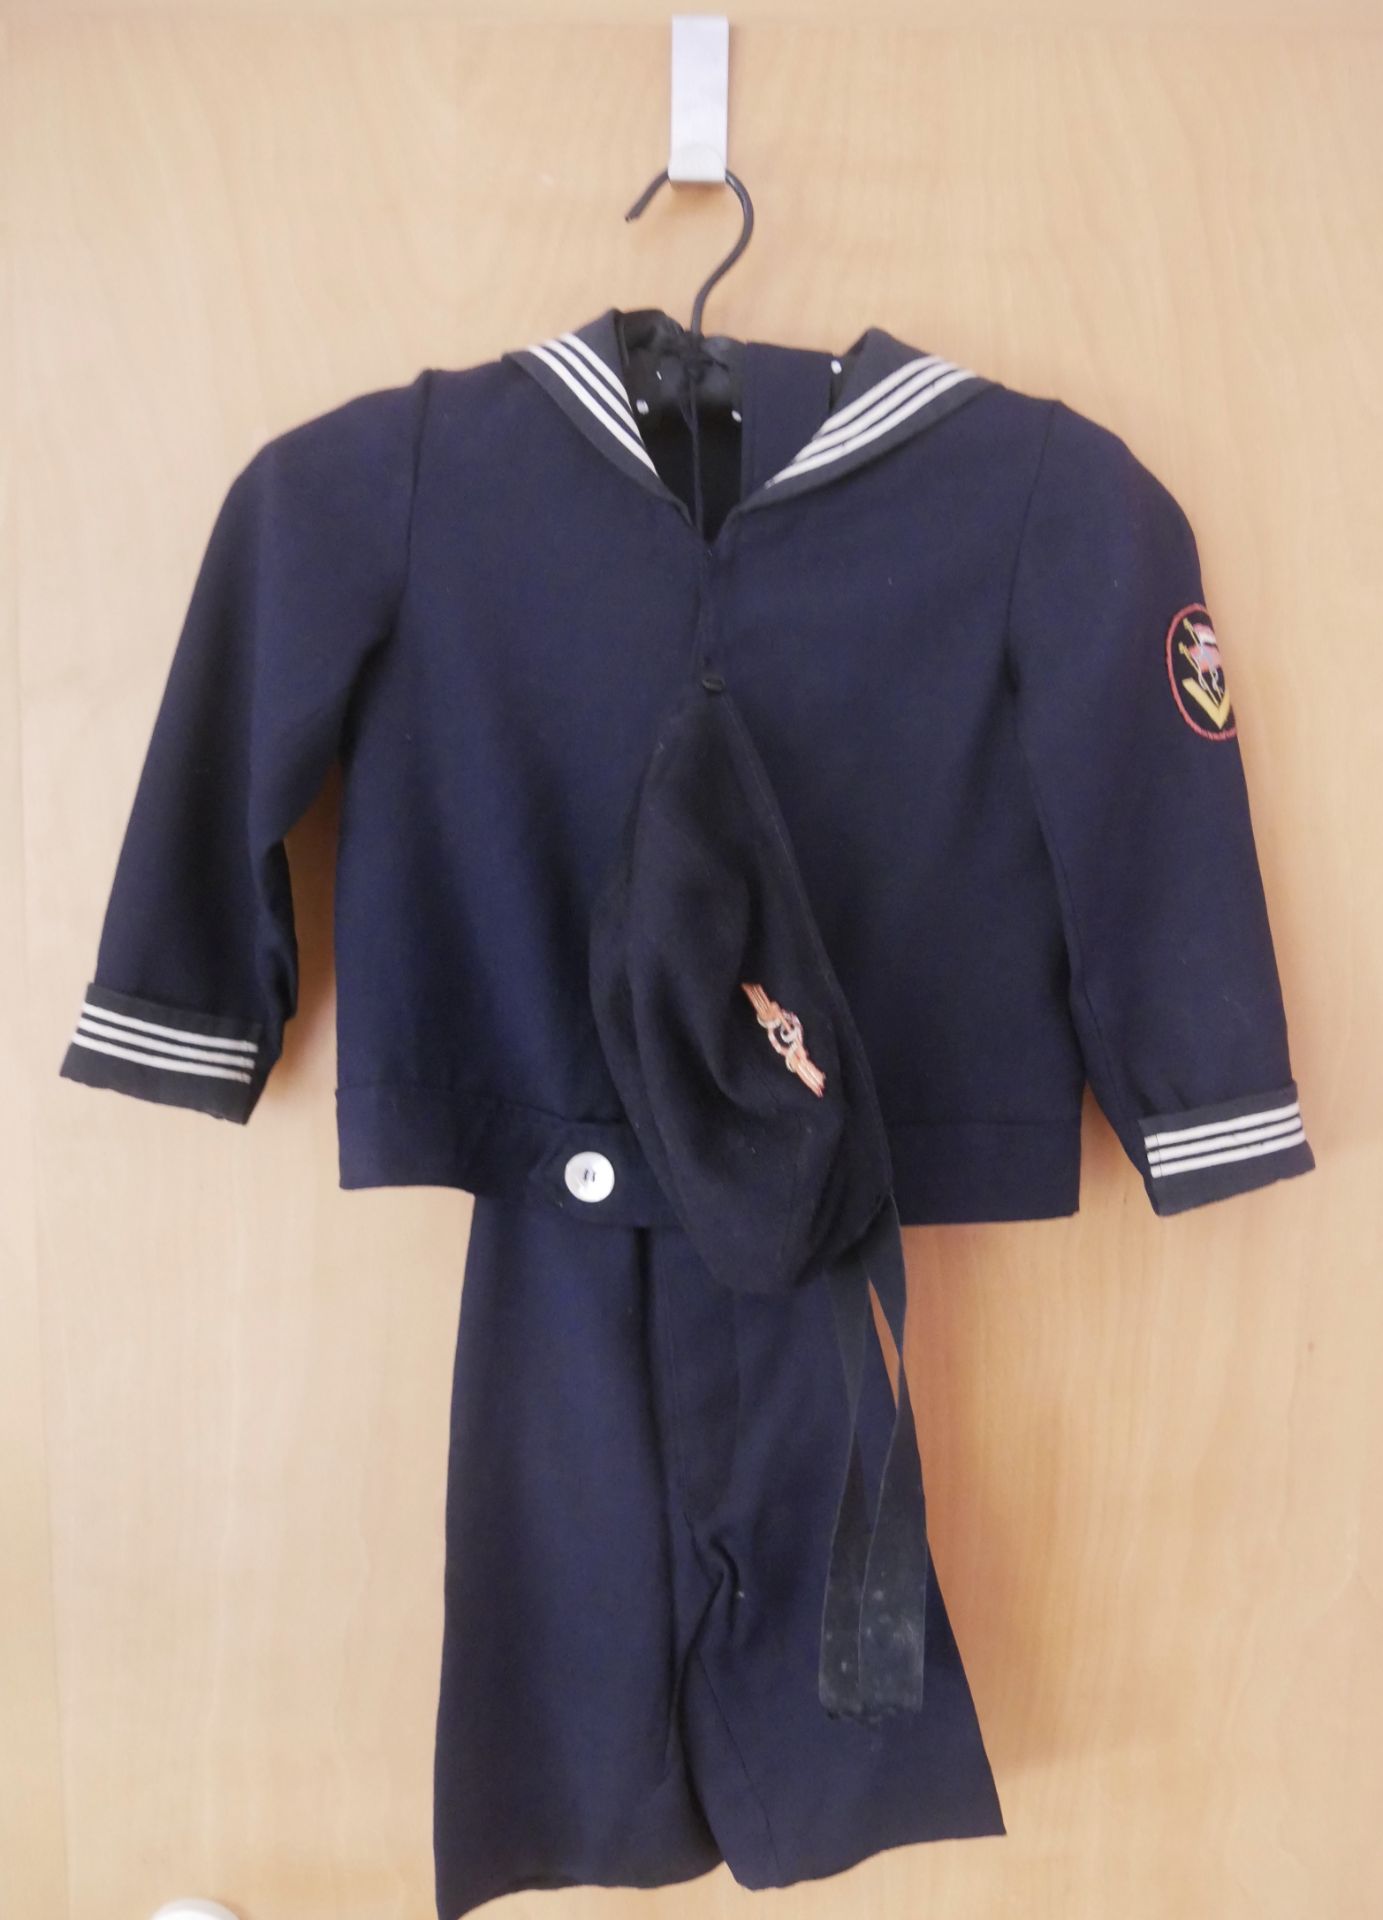 1. Weltkrieg Marine, Kinderuniform "Matrosenanzug" sehr guter Zustand. Bitte besichtigen